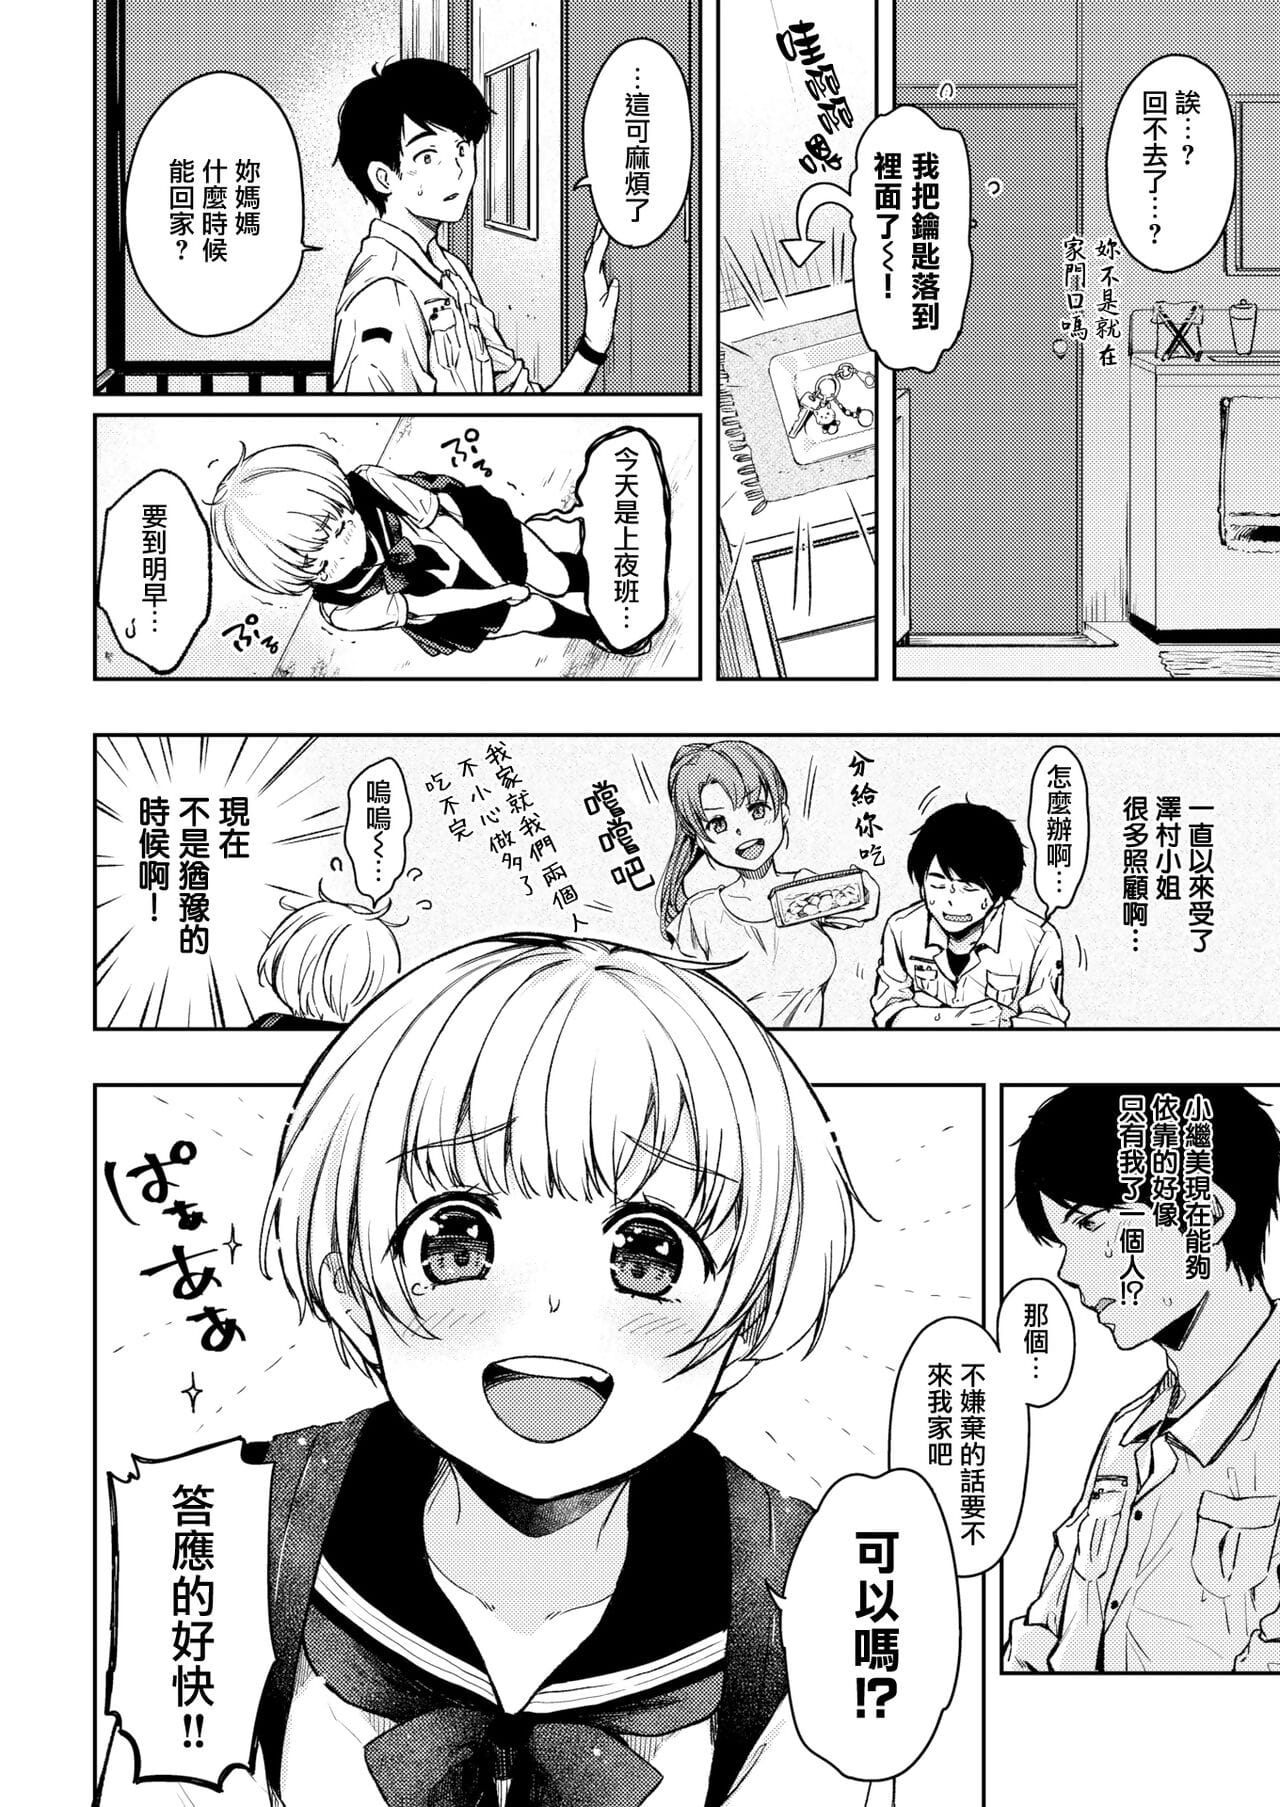 Tsugumi-chan no Onegai page 1